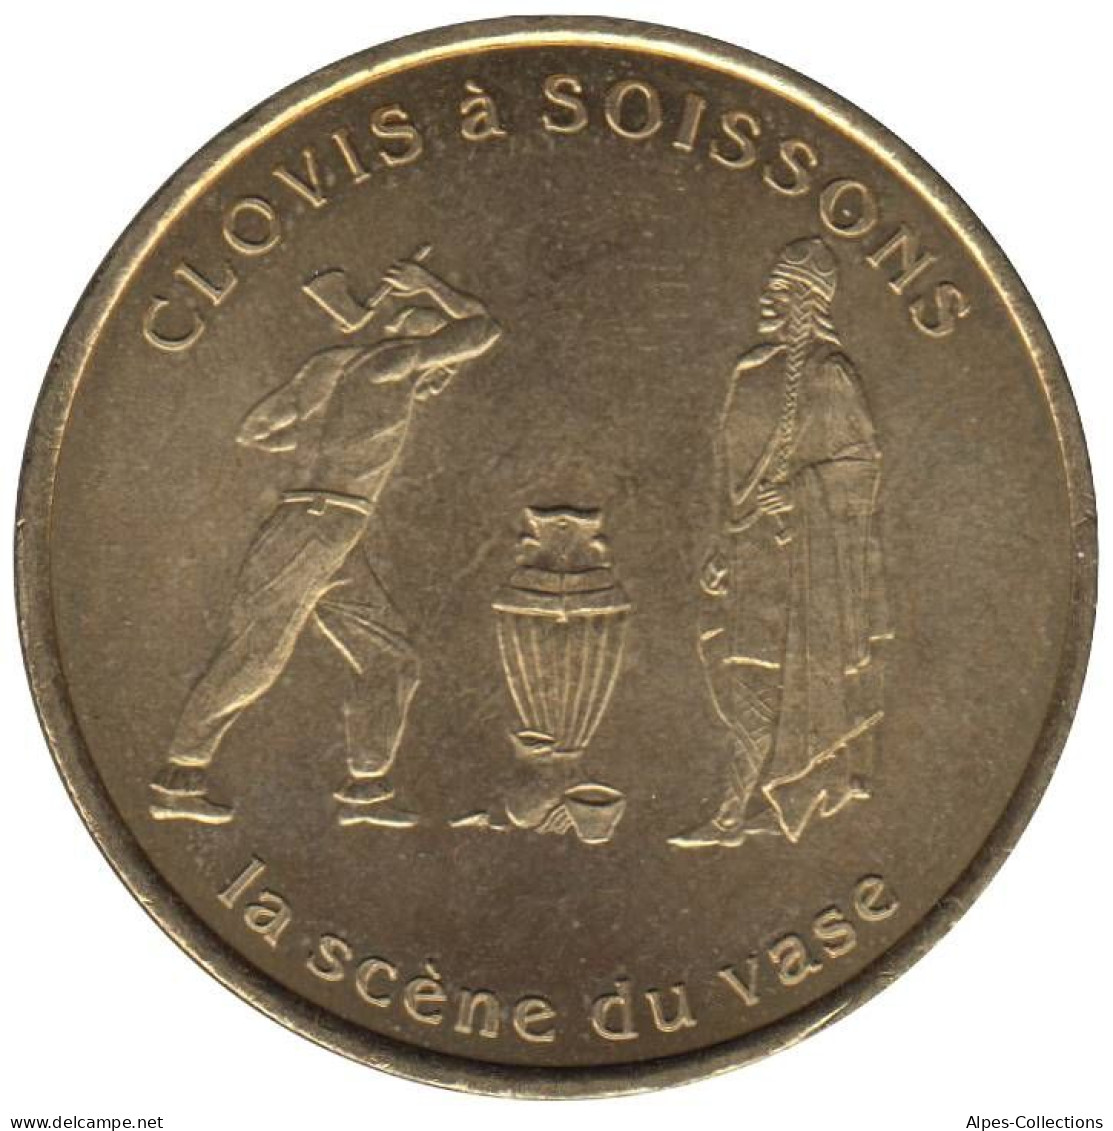 SOISSONS - EU0010.2 - 1 EURO DES VILLES - Réf: T391 - 1997 - Euros Des Villes